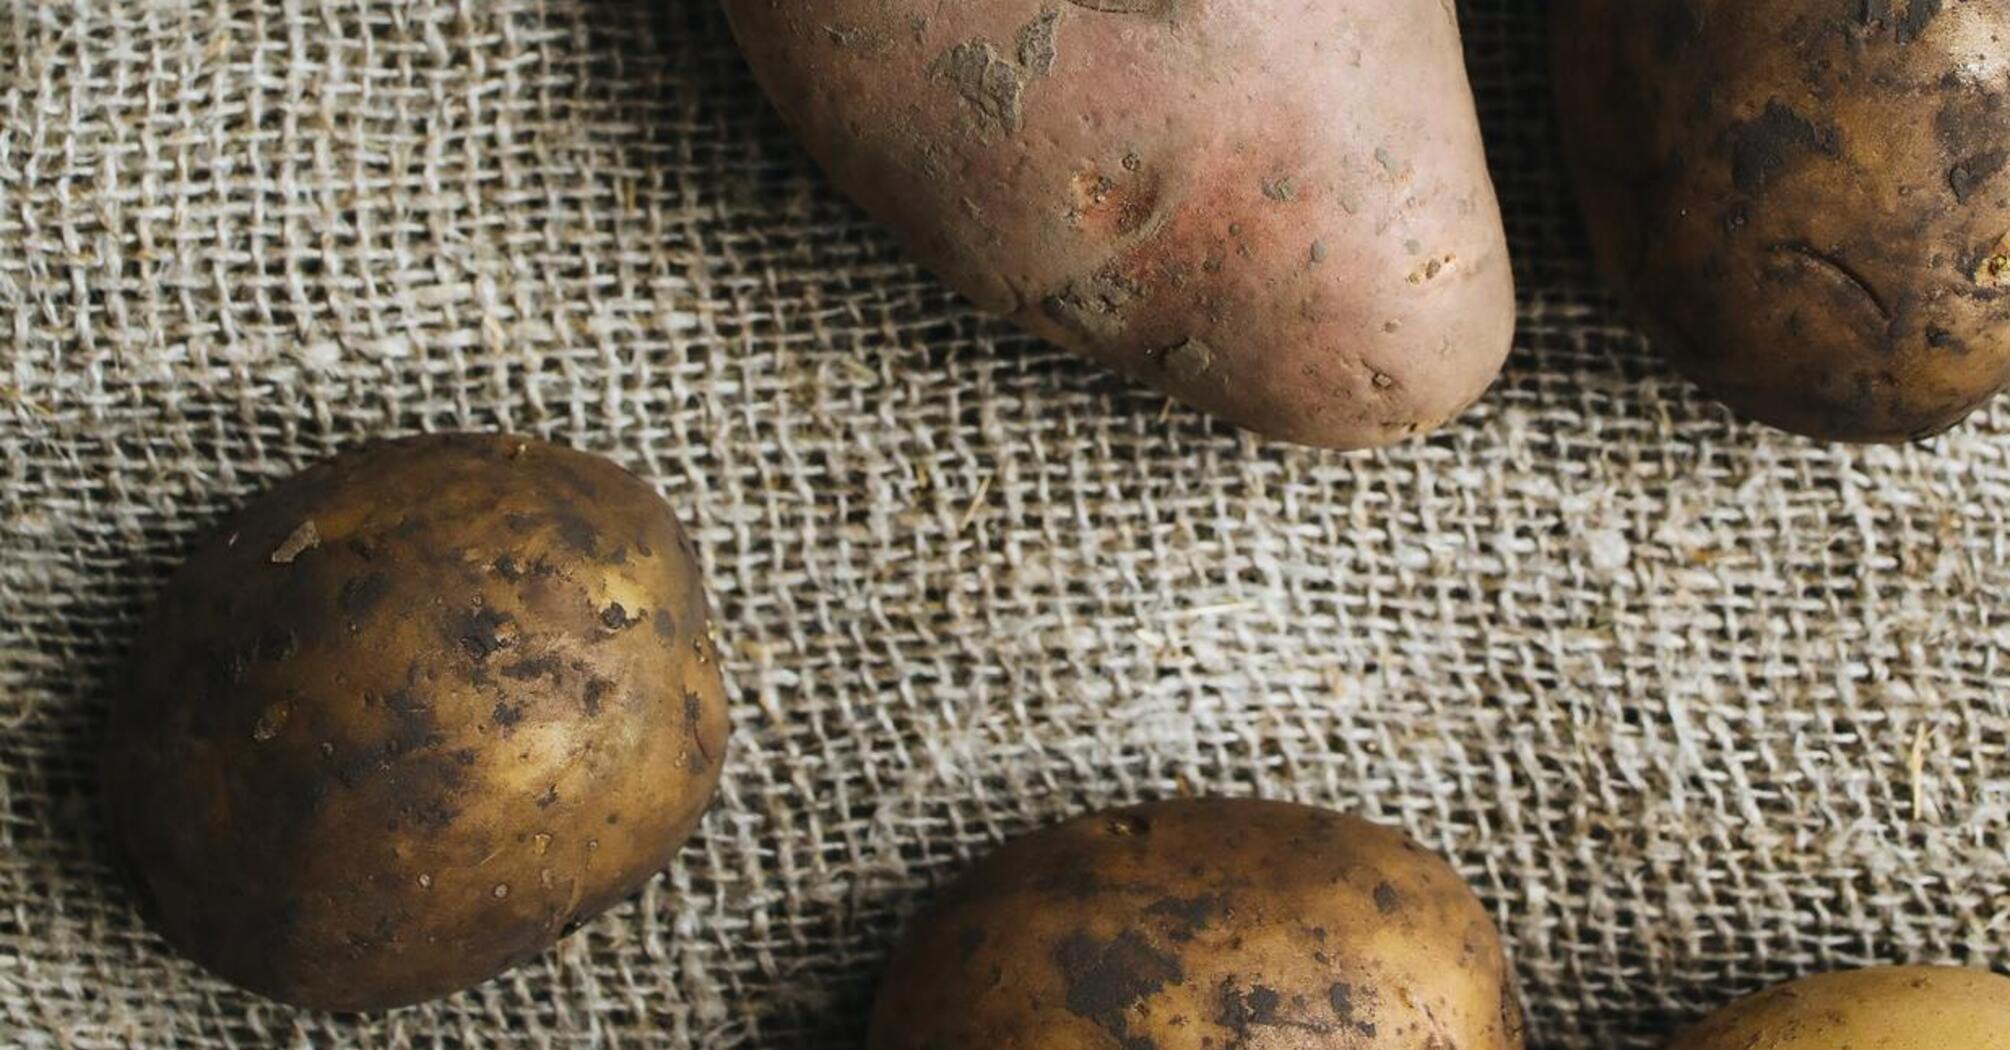 Як правильно зберігати картоплю в домашніх умовах, щоб запобігти її гниттю